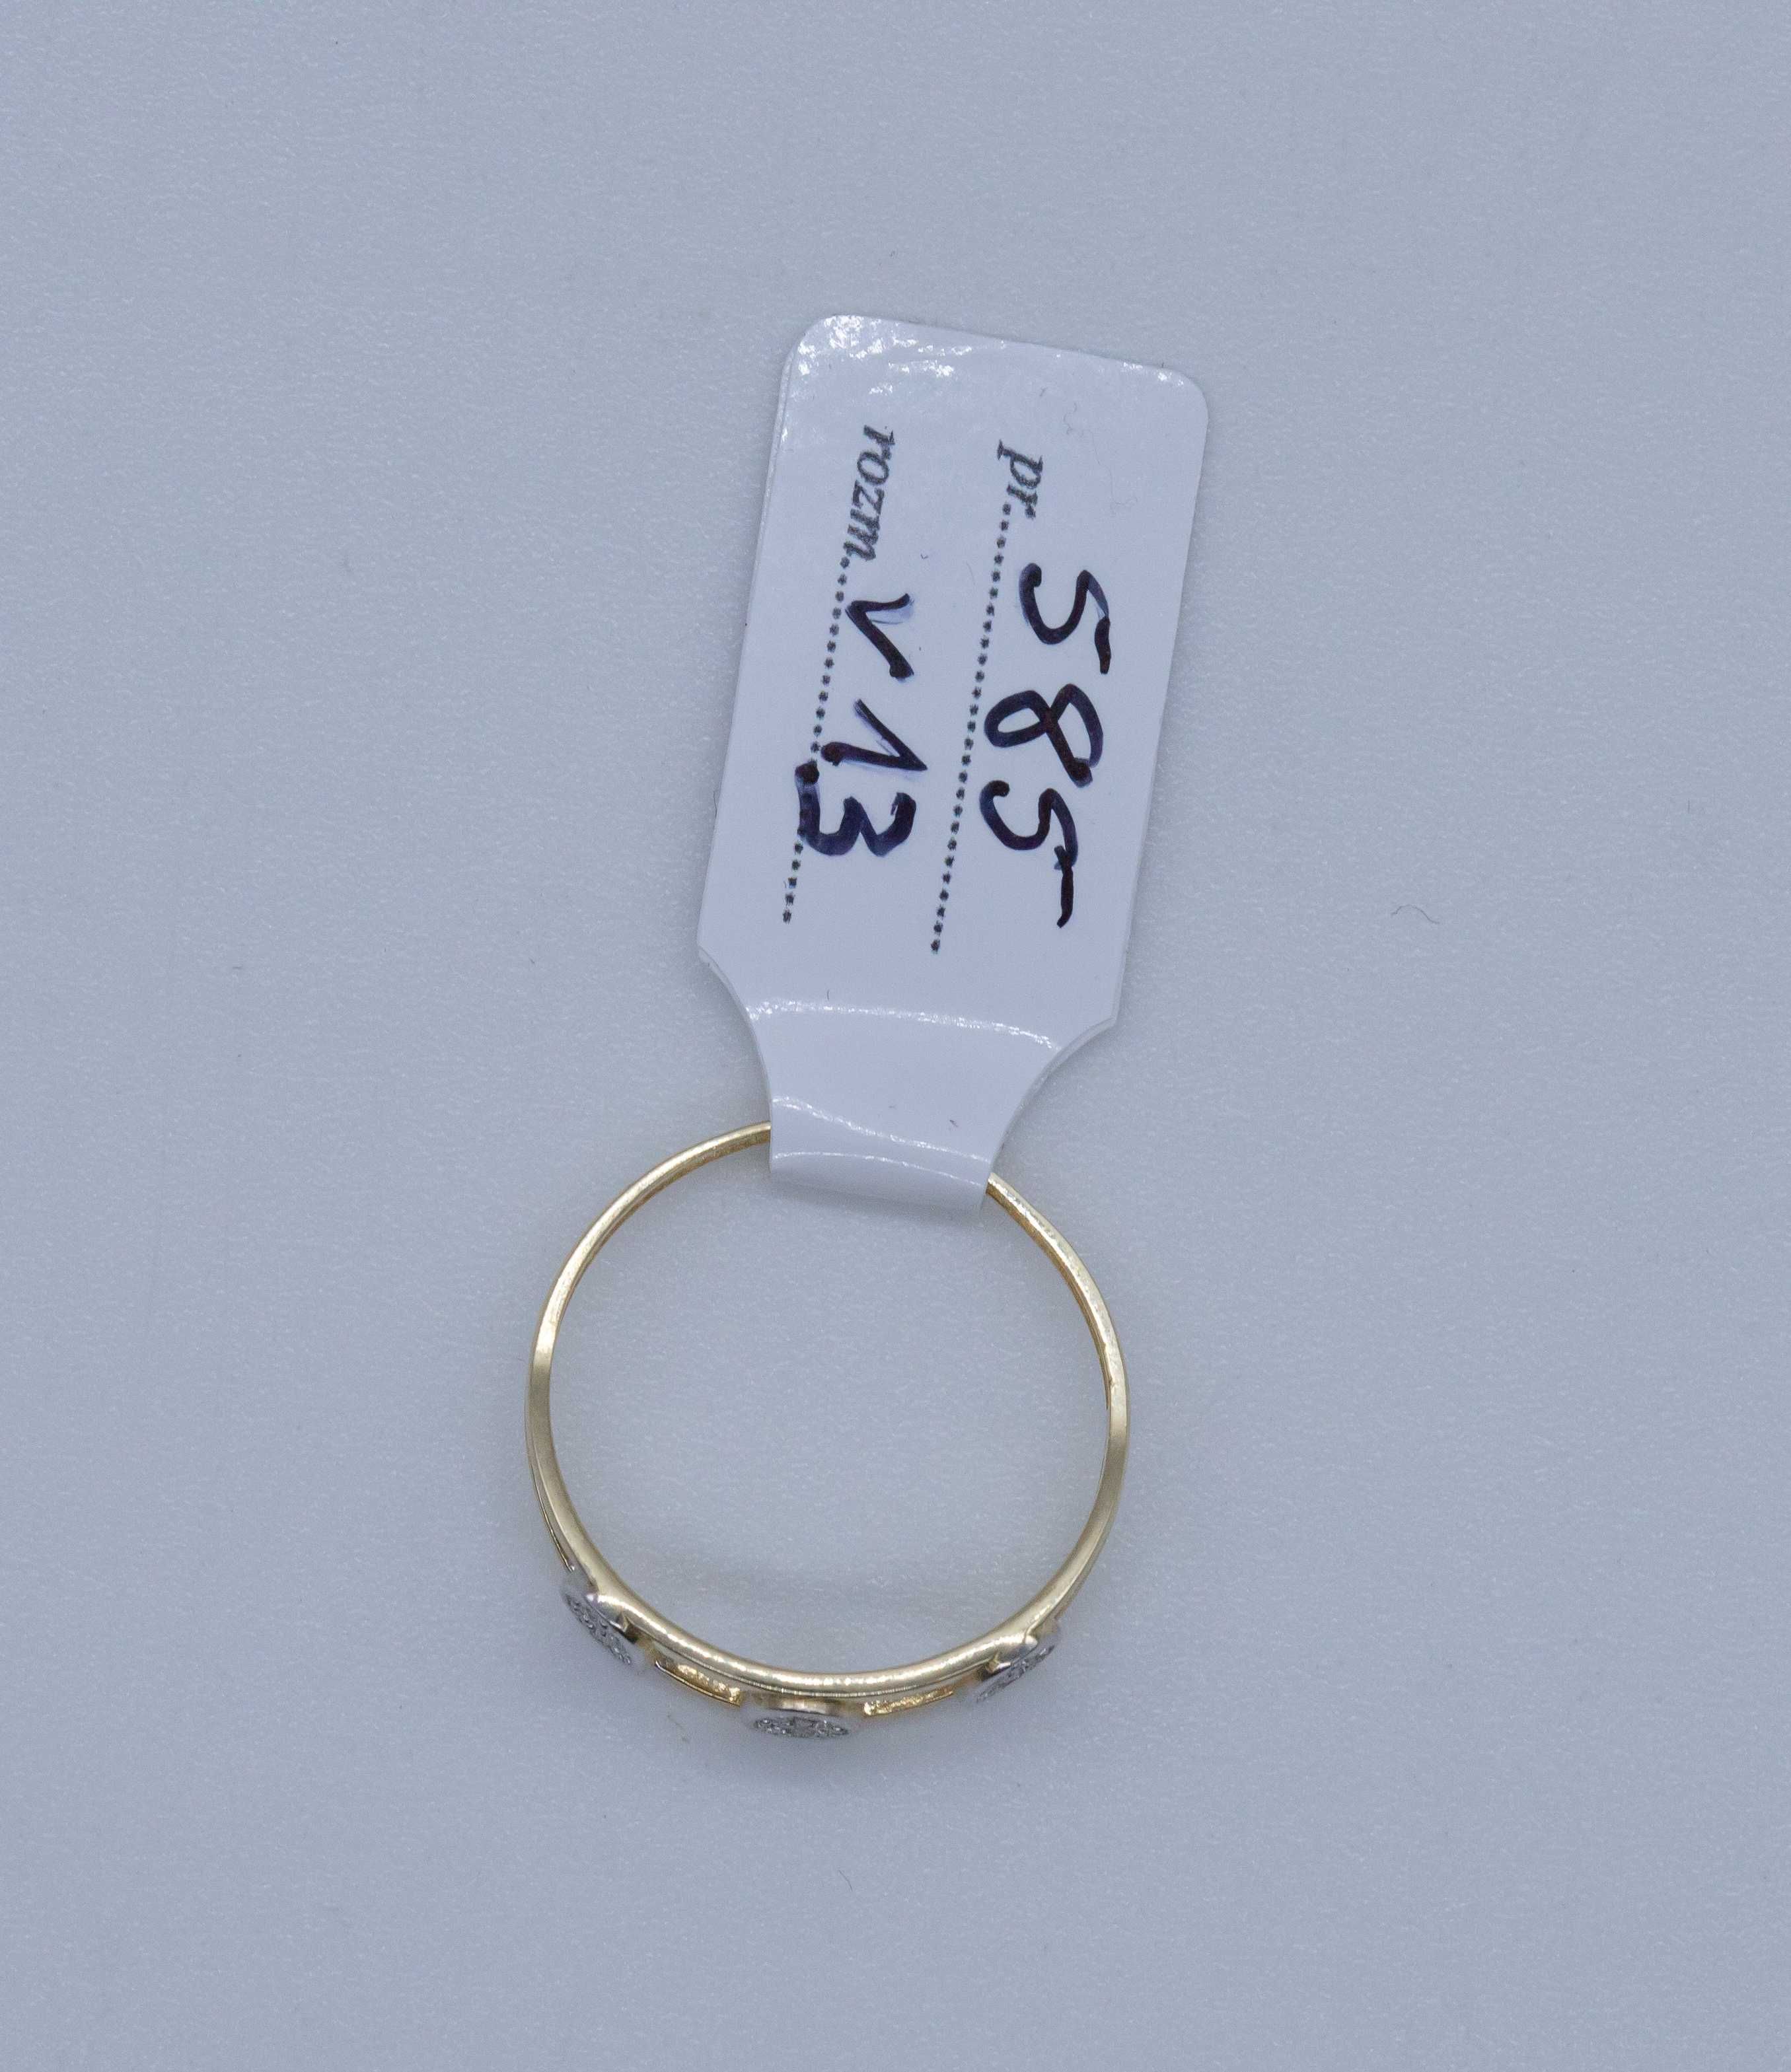 Złoty pierścionek 585 1,21 gram rozmiar 13 NOWY Okazja